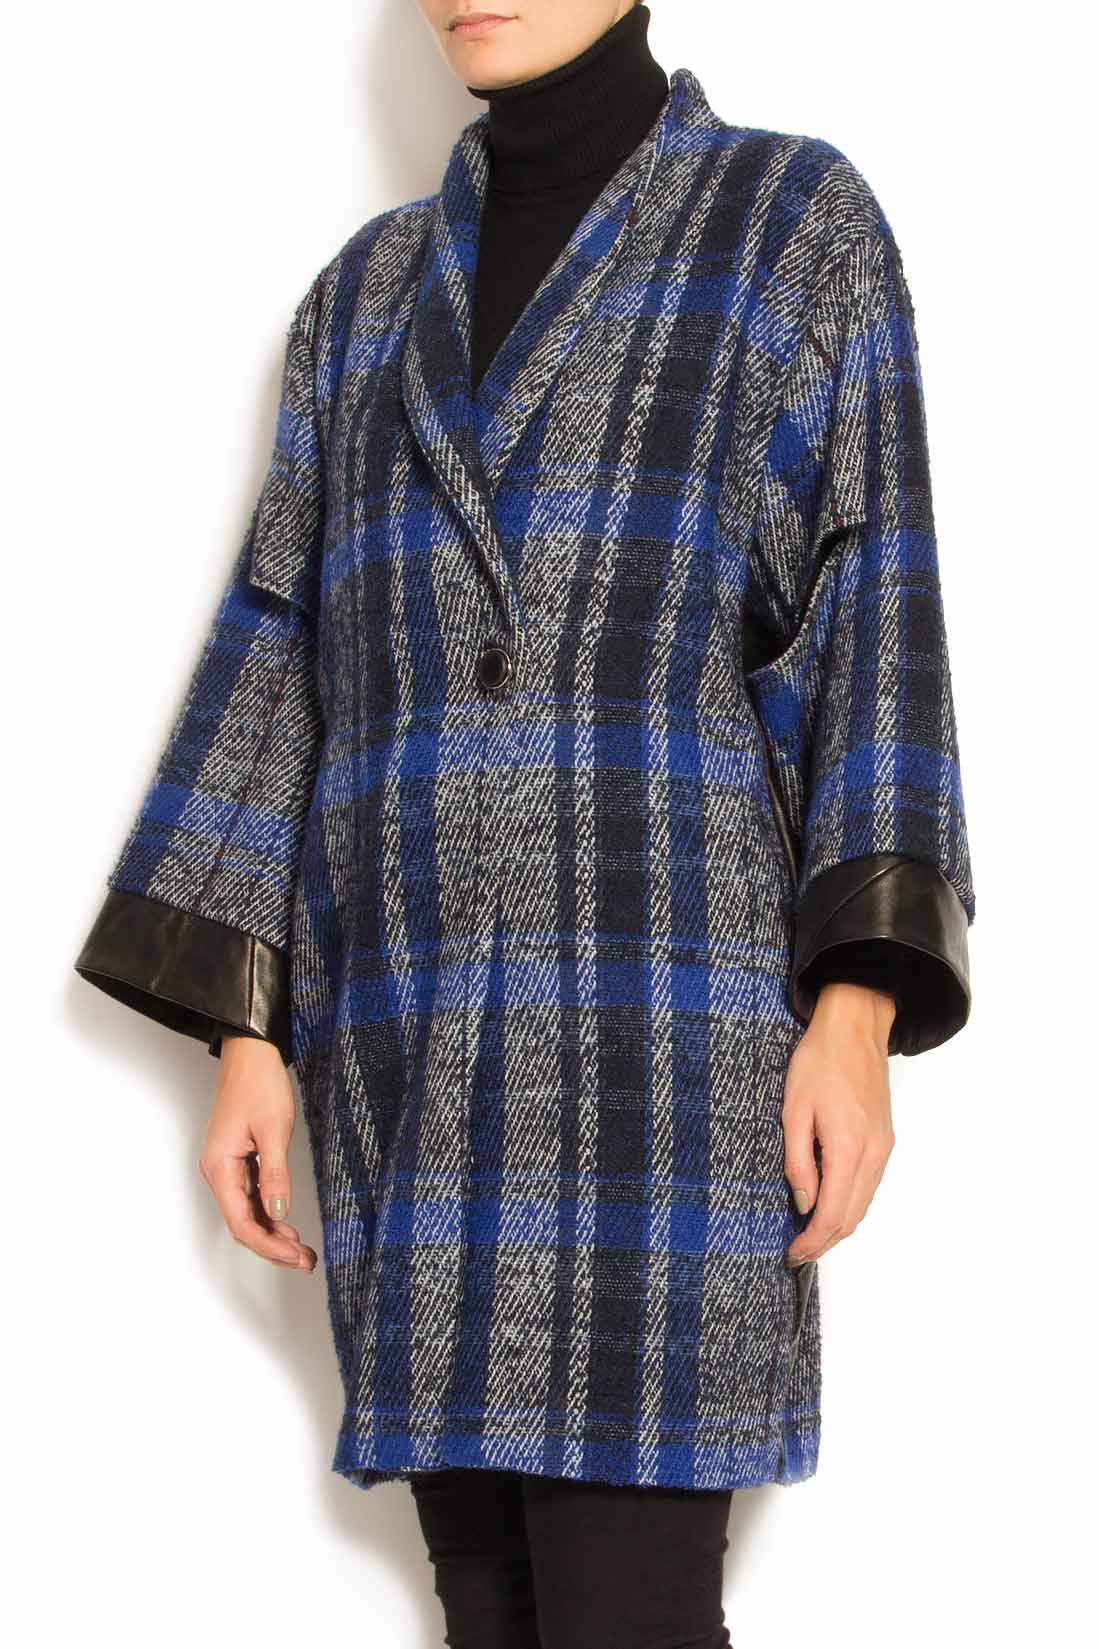 Palton din lana cu insertii din piele Elena Perseil imagine 2